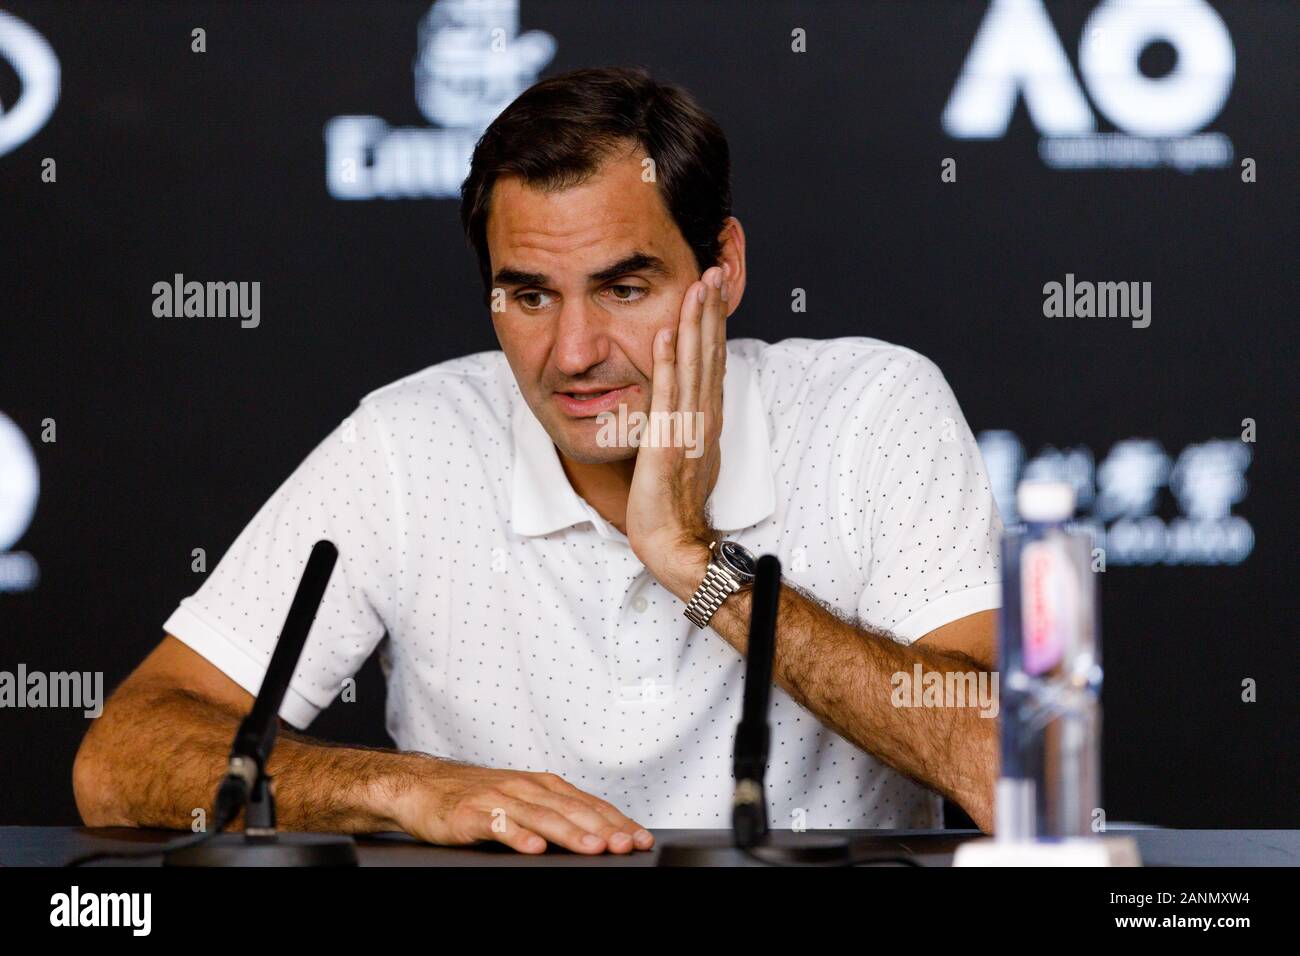 Roger FEDERER (SUI) während einer Pressekonferenz bei den Australian Open 2020 Stockfoto